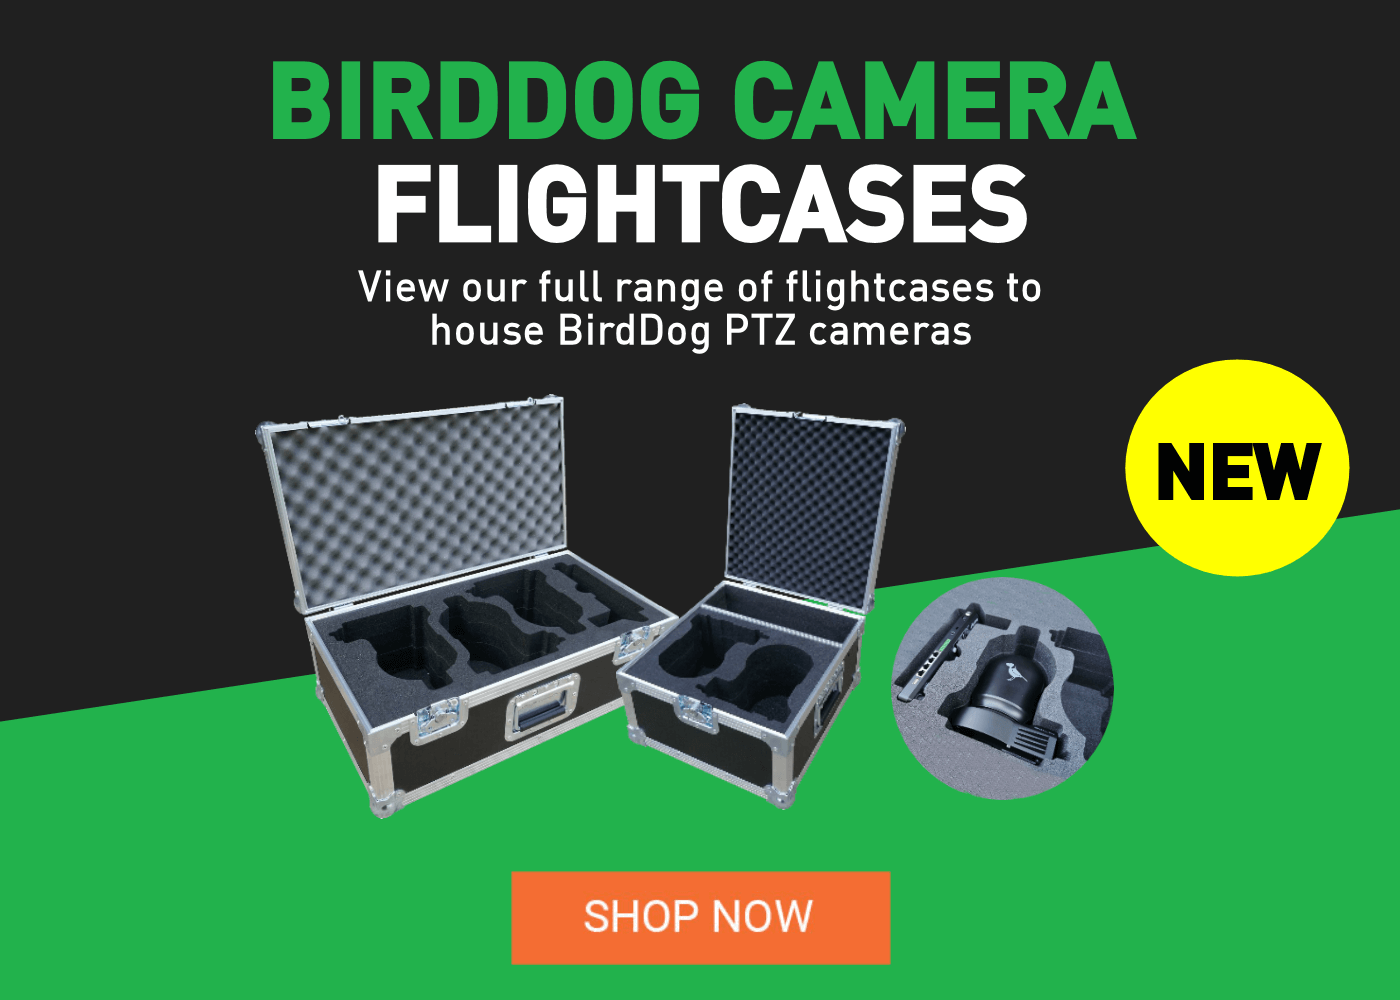 BirdDog Camera Flight Cases